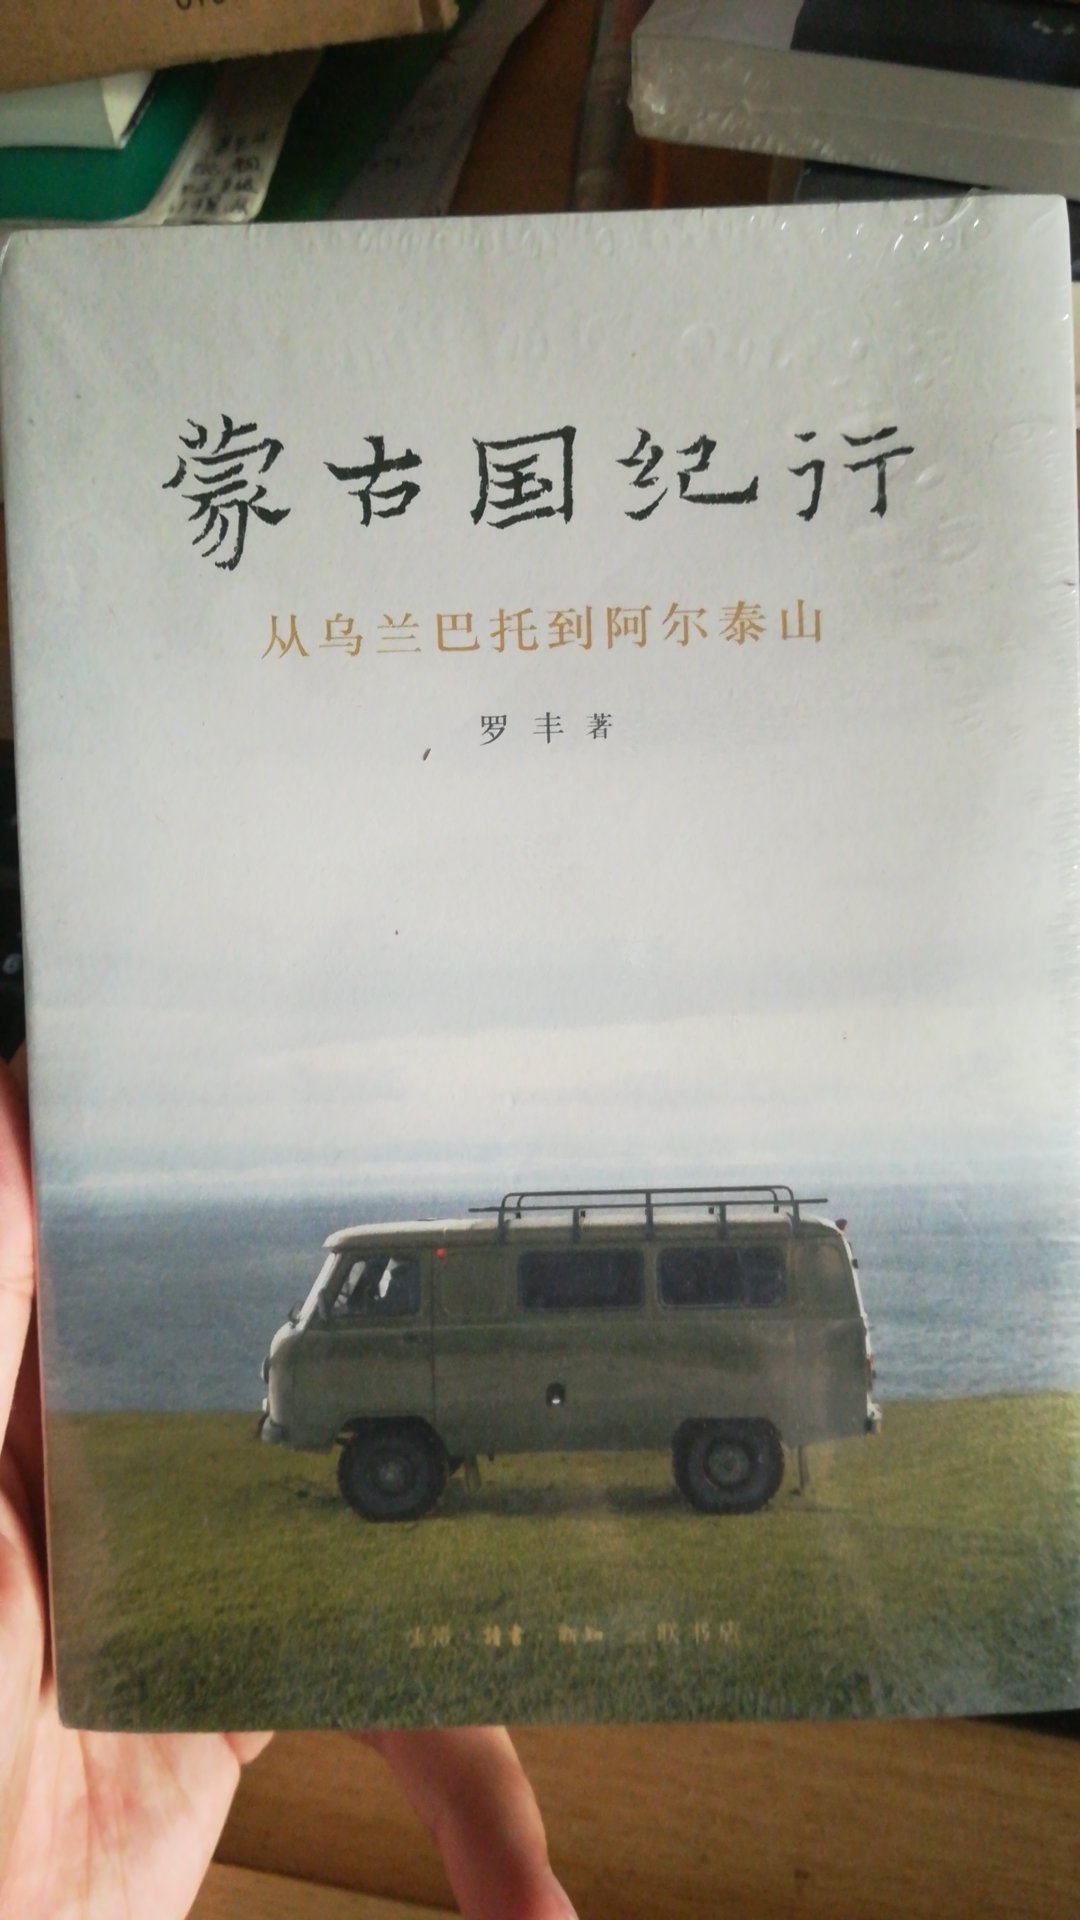 很少有机会看到如此深入蒙古的游记，图文并茂，是专业人士写的，可惜书看起来写得有点过于普及了